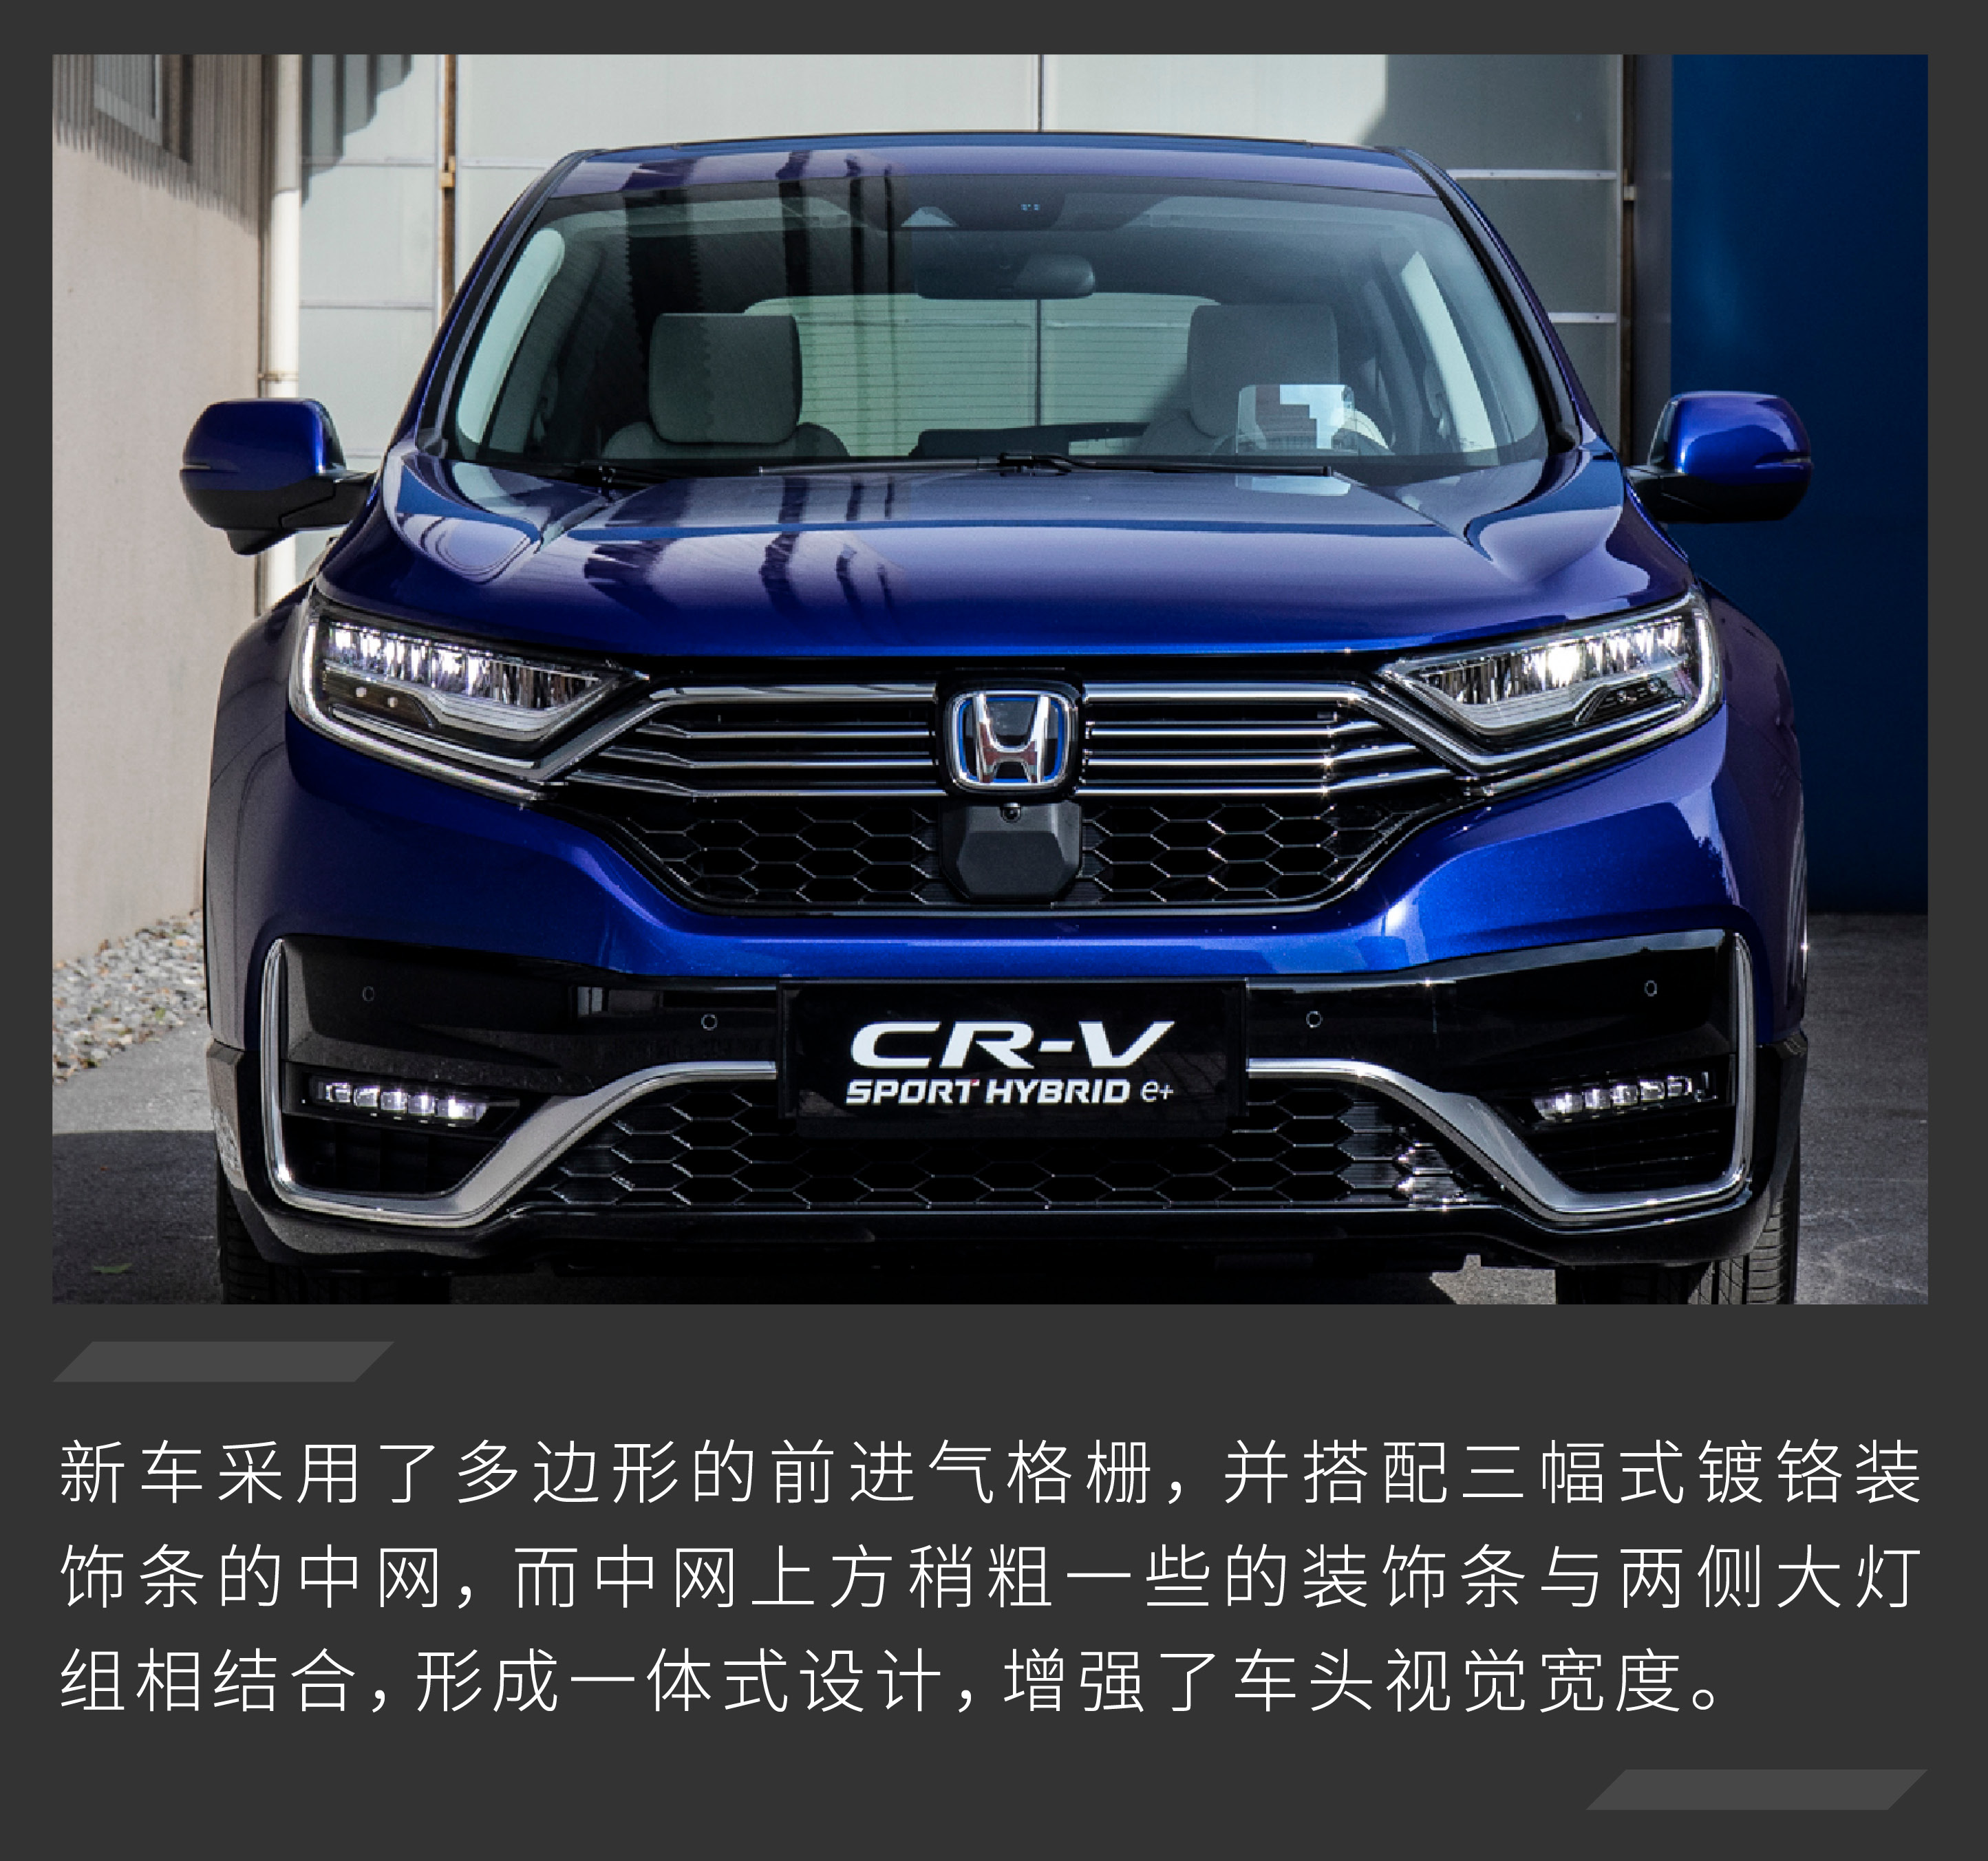 2月2日,东风本田cr-v锐·混动e 正式上市,新车共推出了3款车型,补贴